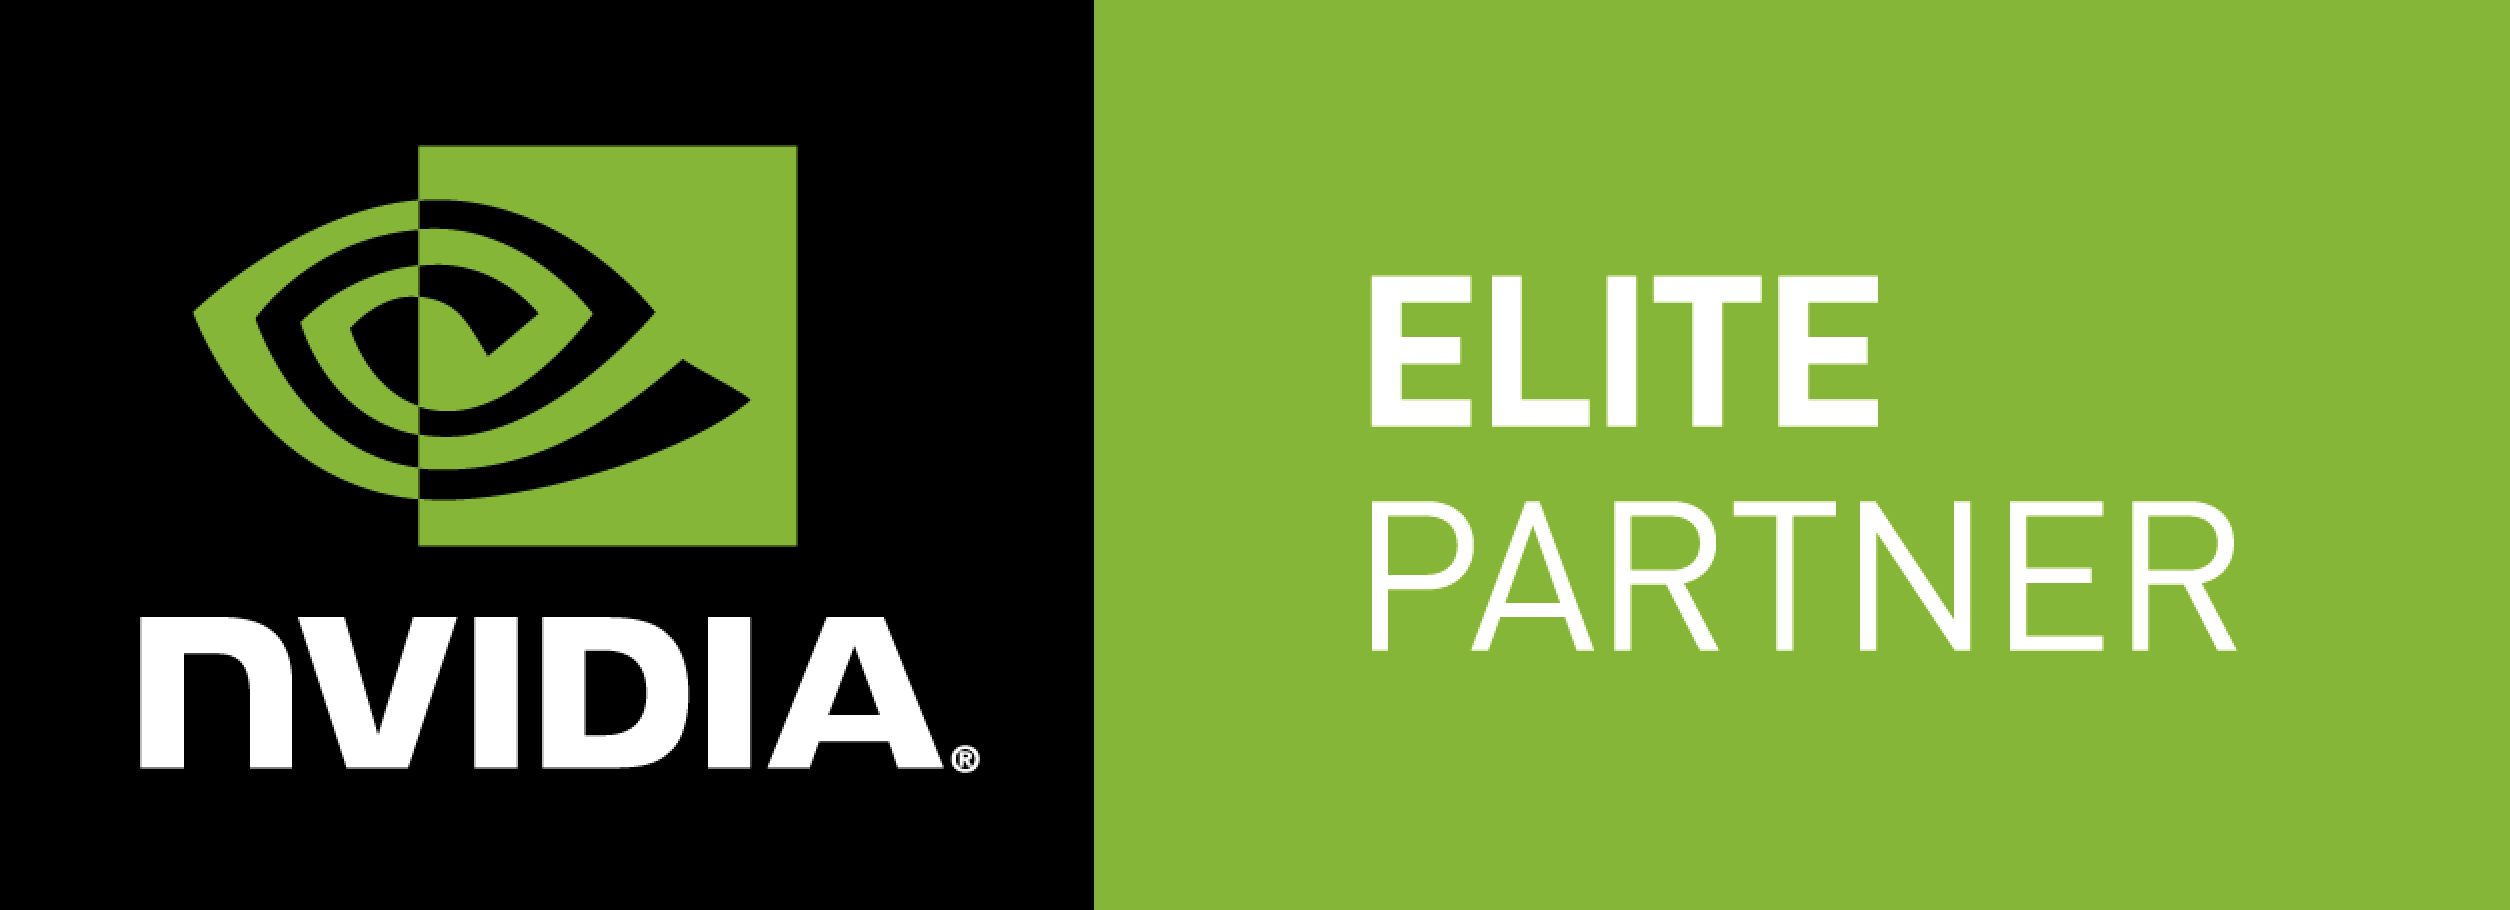 Nvidia Elite Partner Logo - cropped